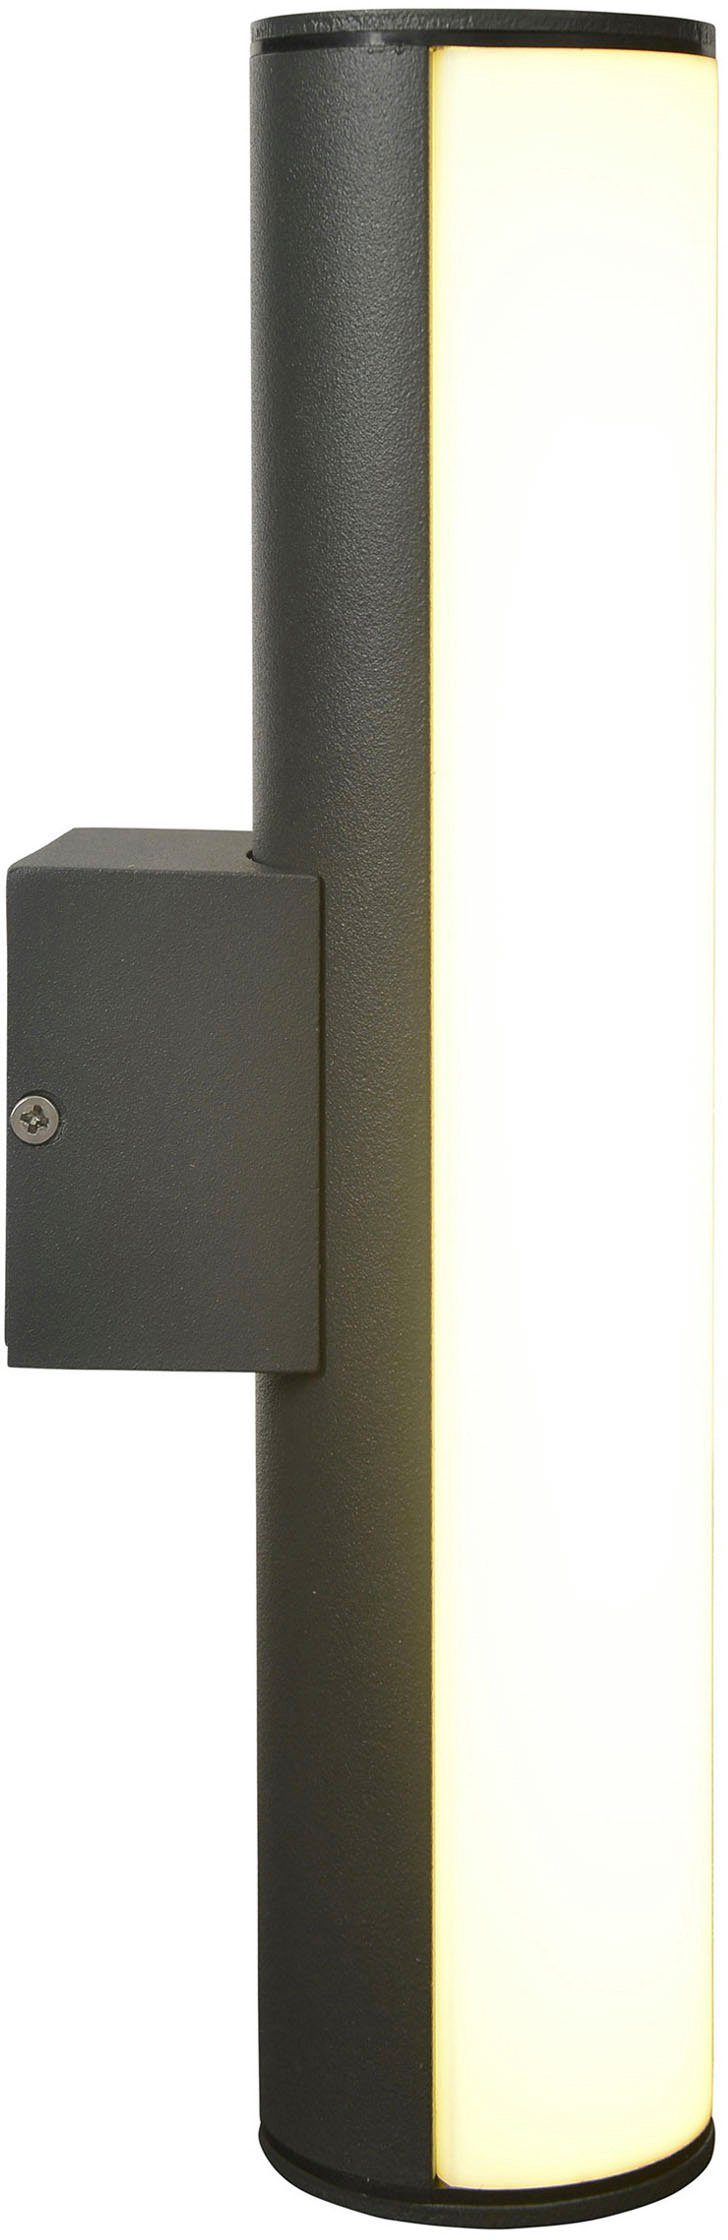 LED Licht Warmweiß, Länge dunkelgrau IP54 Aluminium Flair, 30cm Außen-Wandleuchte warmweißes näve